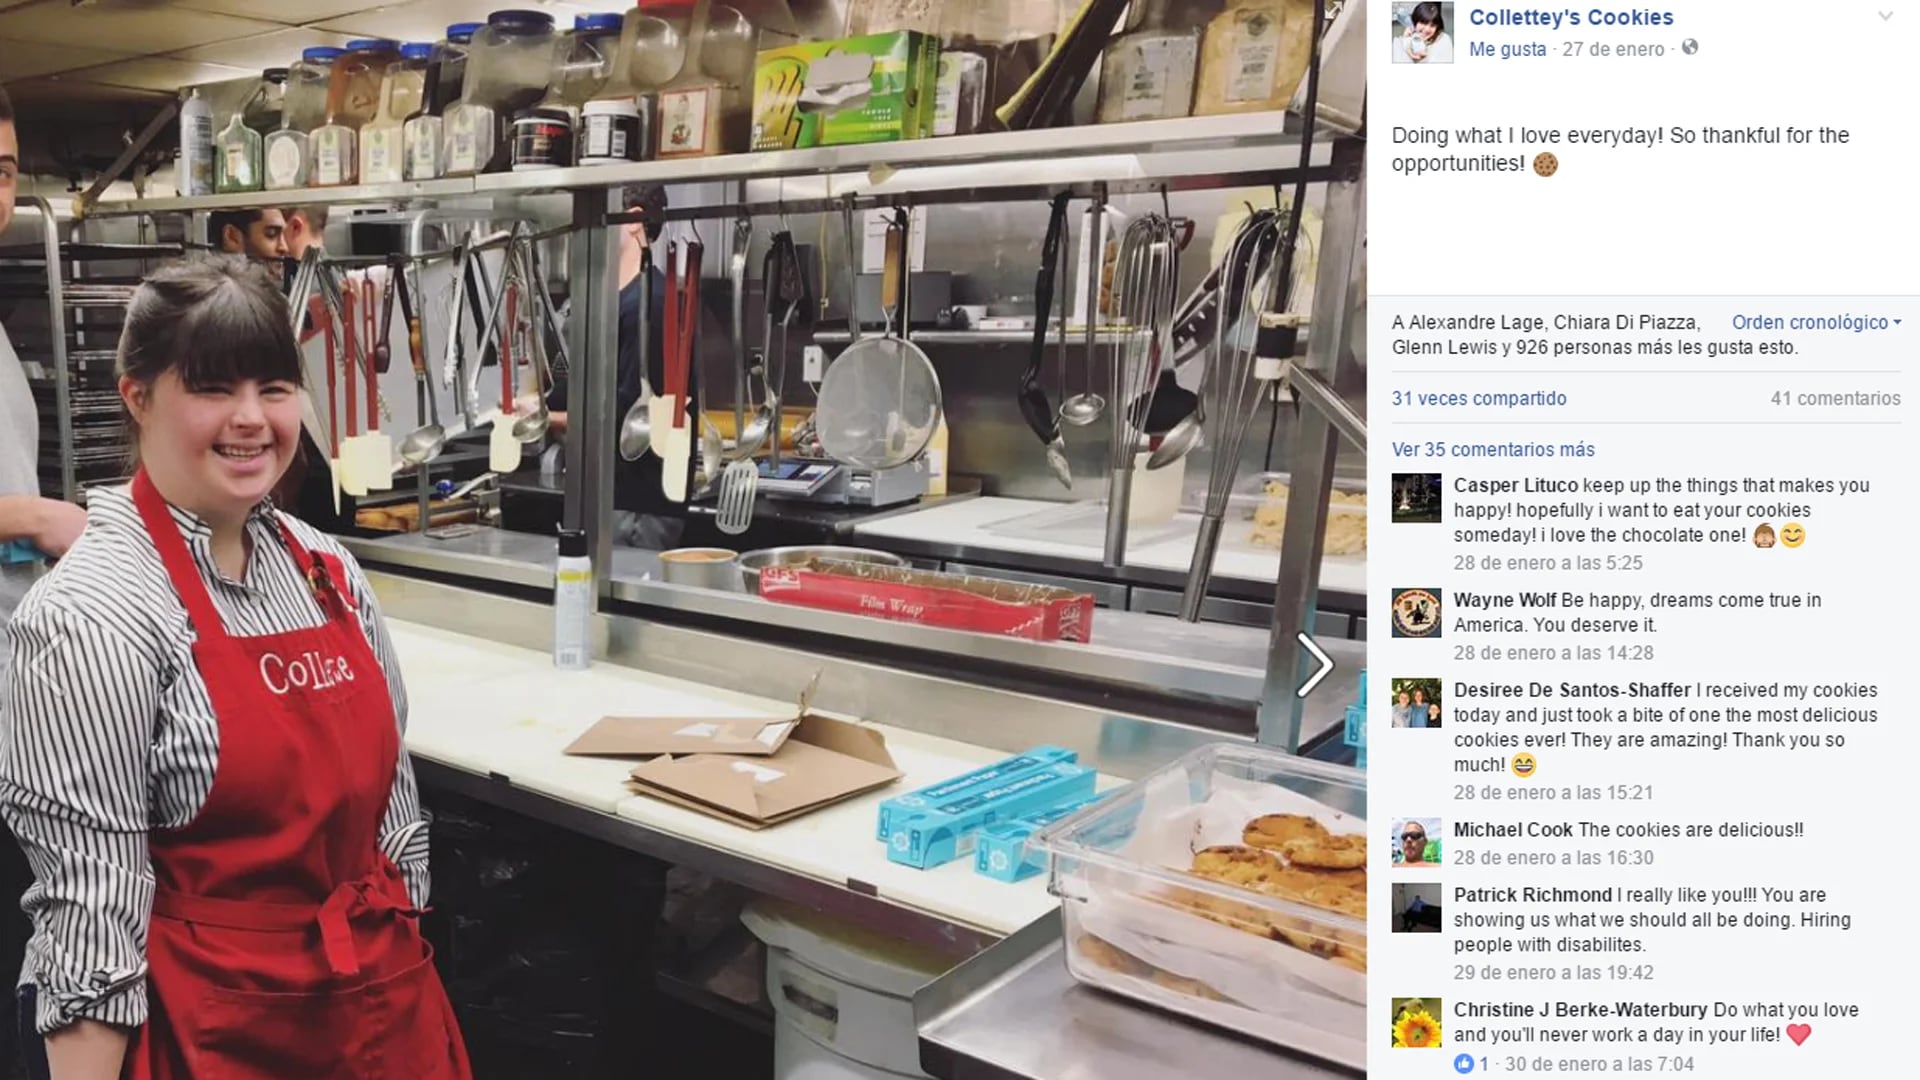 La joven comparte en sus redes sociales el día a día de su negocio (Facebook Colette)